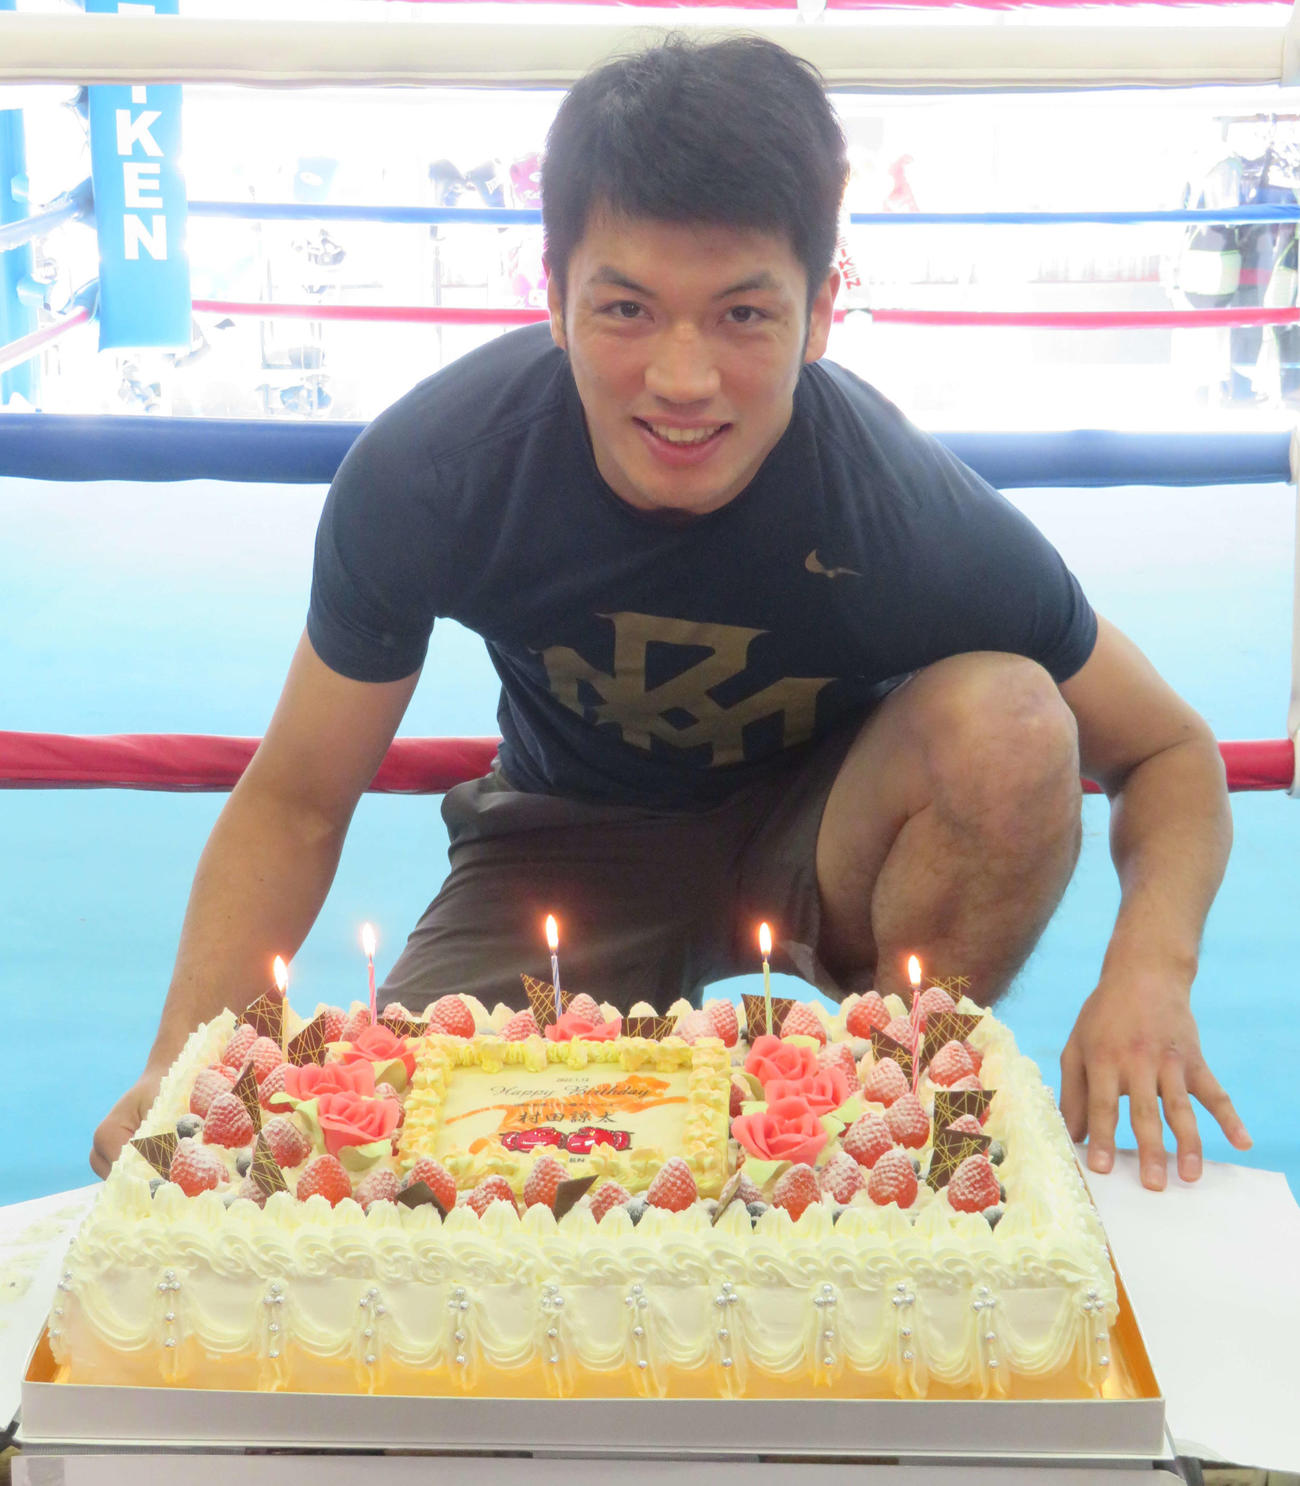 36歳の誕生日を祝うバースデーケーキを前に笑顔をみせるWBA世界ミドル級スーパー王者村田